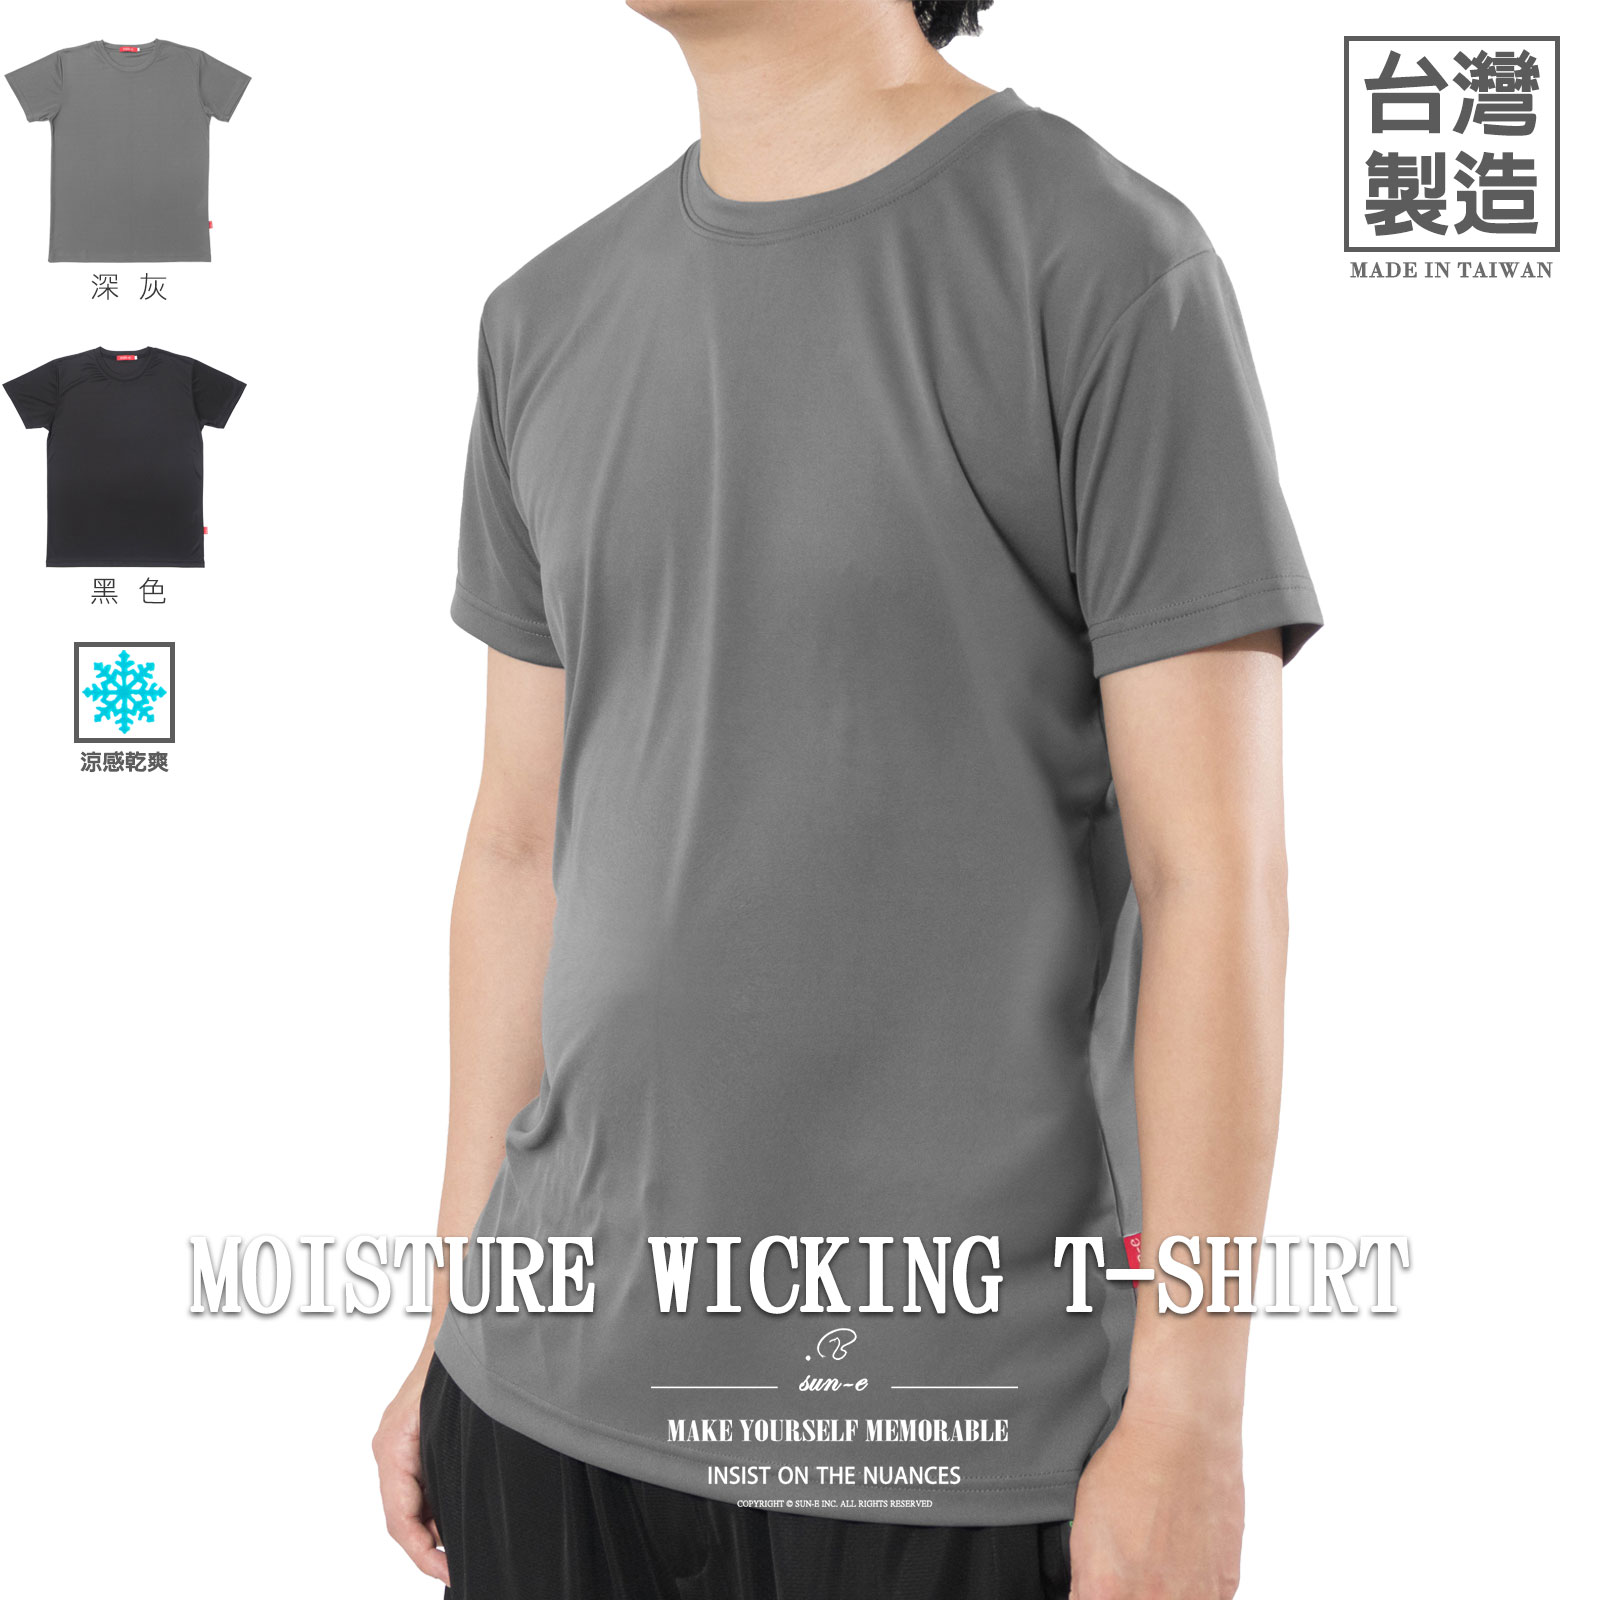 台灣製涼感排汗素面T恤 吸濕排汗紗 機能性布料 短袖T恤 圓領T恤 休閒T恤 短袖上衣 Made In Taiwan Plain T-Shirts Moisture Wicking T-shirts Short Sleeve T-shirts Crew Neck T-Shirts (310-3995-21)黑色、(310-3995-22)深灰色 L XL (胸圍:41~46英吋 / 104~117公分) 男 [實體店面保障] sun-e